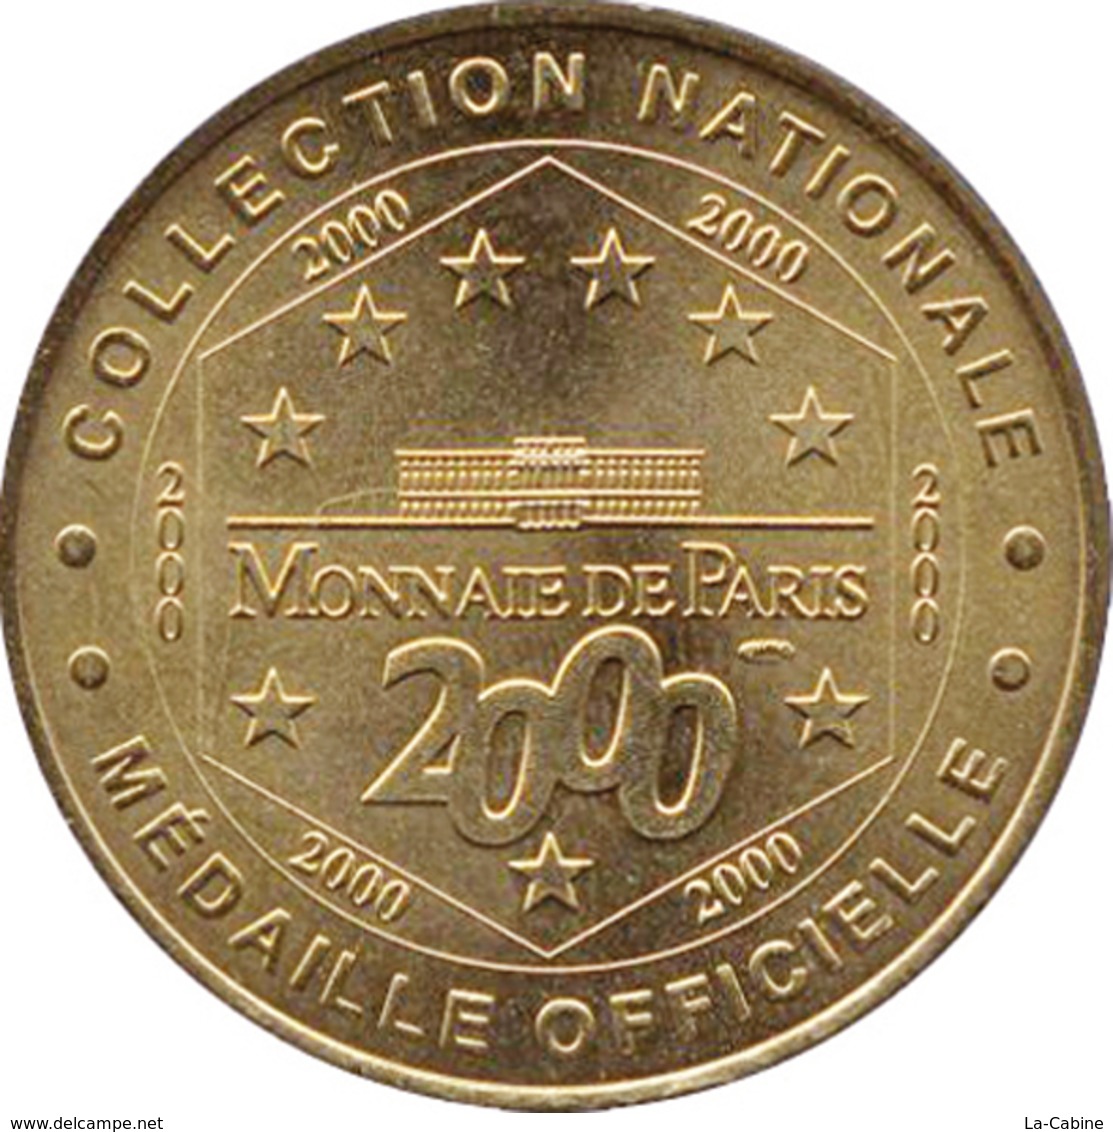 51 REIMS CATHÉDRALE NOTRE-DAME MÉDAILLE MONNAIE DE PARIS 2000 JETON TOURISTIQUE MEDALS TOKENS COINS - 2000